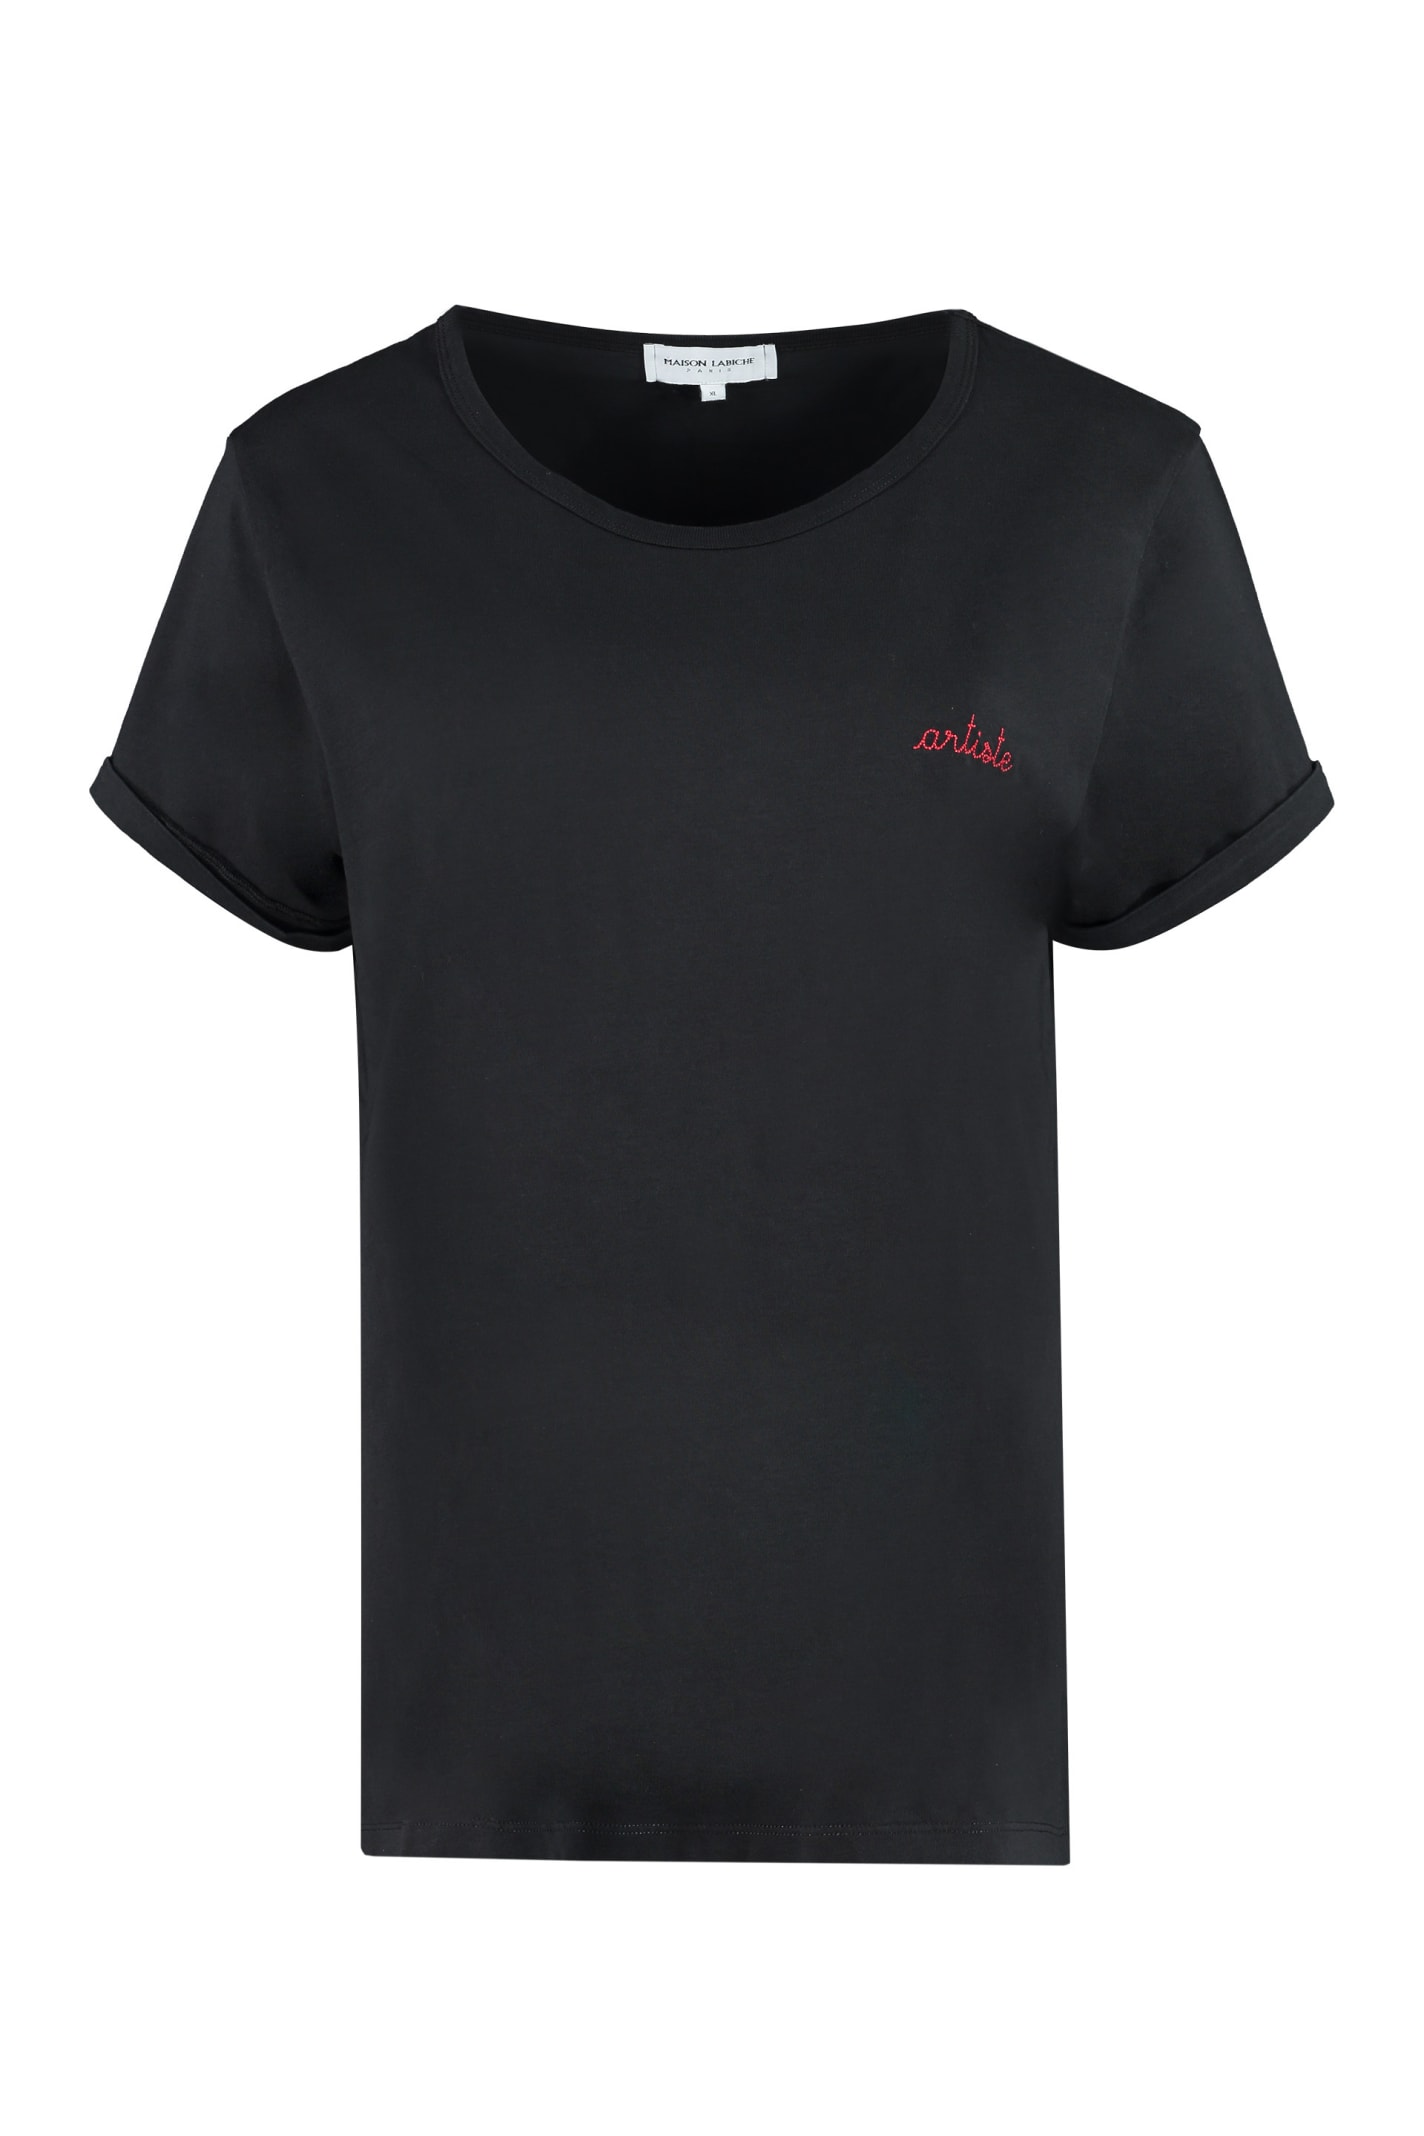 Maison Labiche Cotton Crew-neck T-shirt